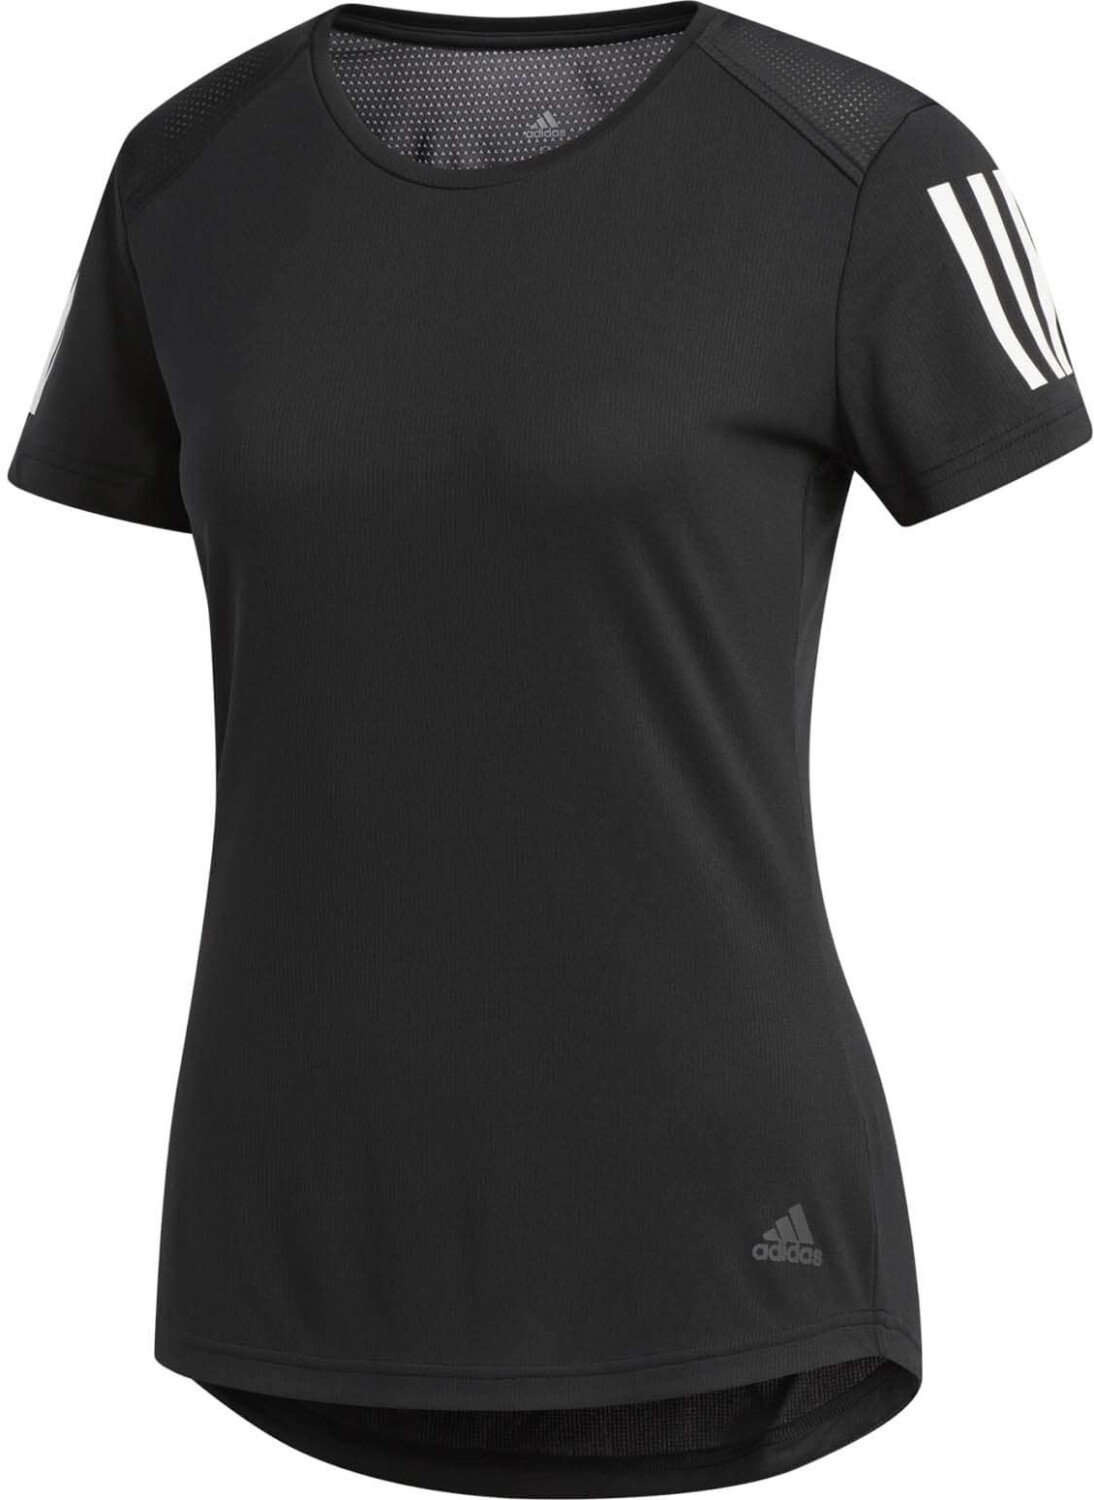 Adidas Own The Run T-Shirt Women black (DQ2618)